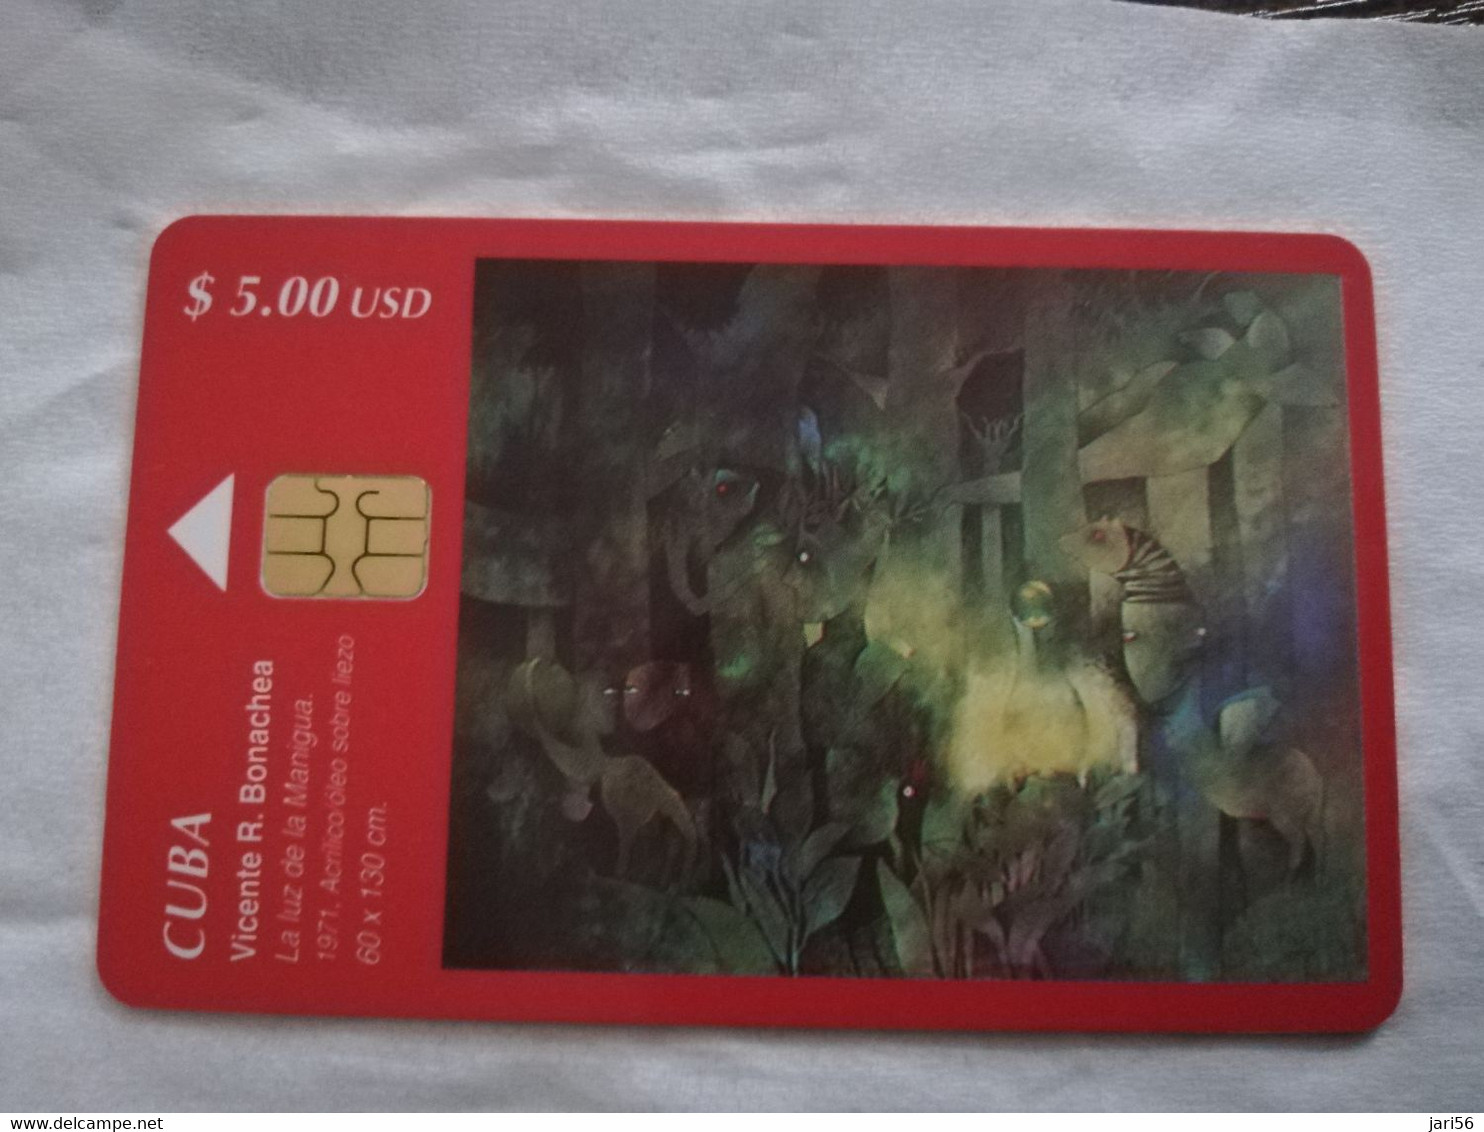 CUBA $5,00  CHIPCARD   VICENTE R BONACHEA        Fine Used Card  ** 6809** - Cuba